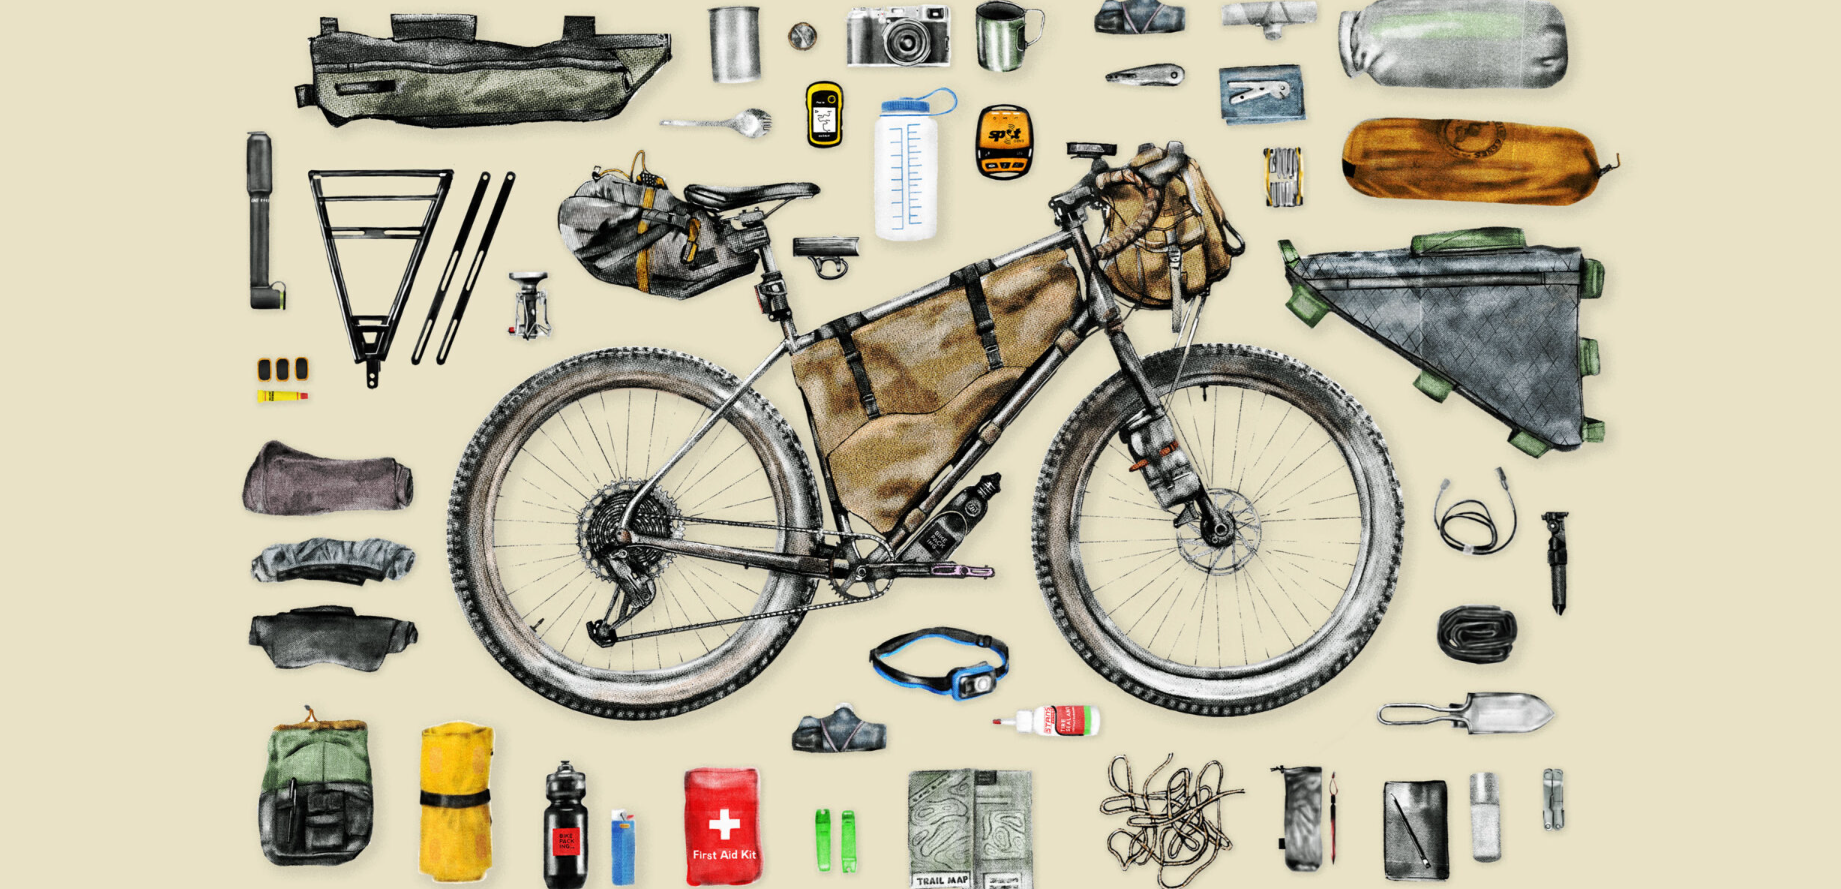 Bikepacking 101